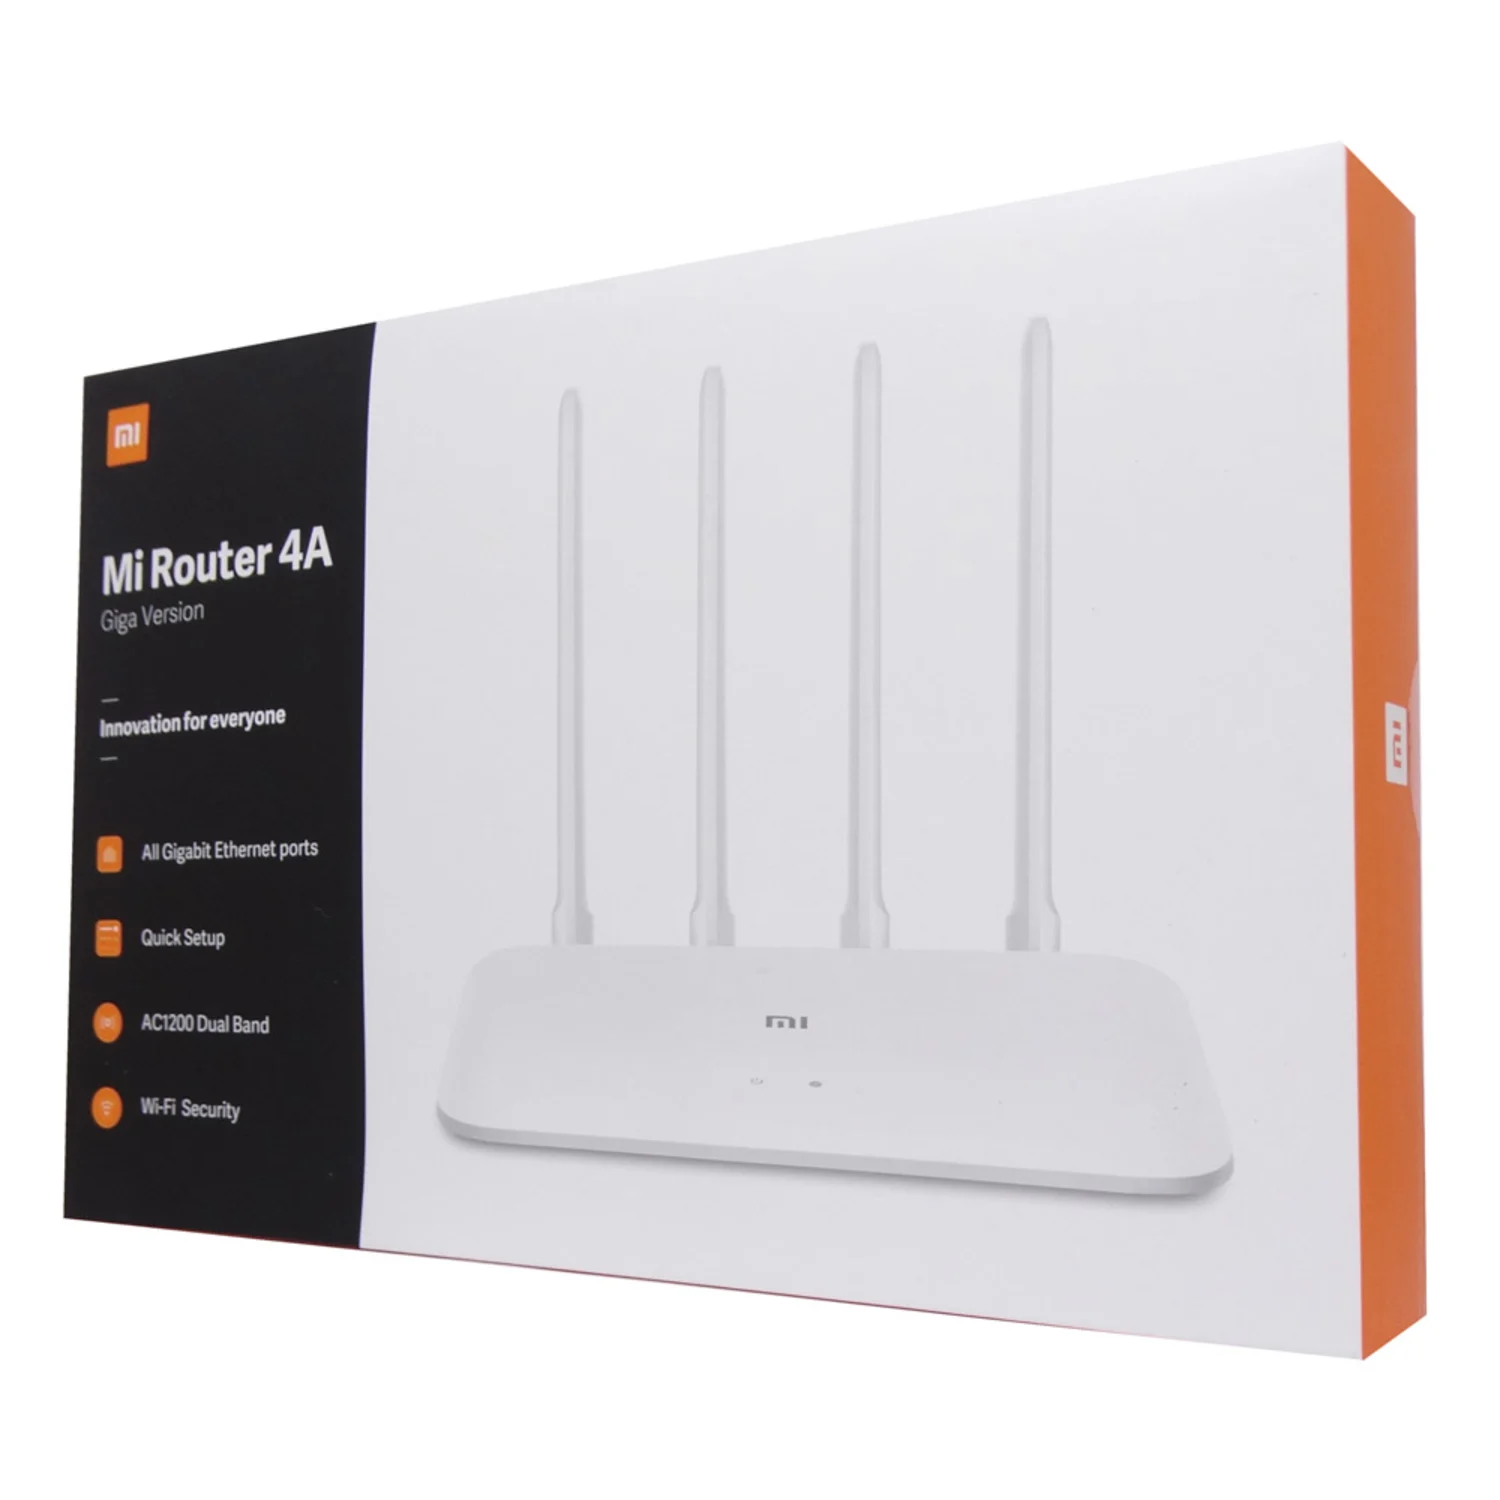 Roteador Xiaomi Mi Router 4A DVB4224GL 300MBPS / 4 Antenas / Dual Band - Branco